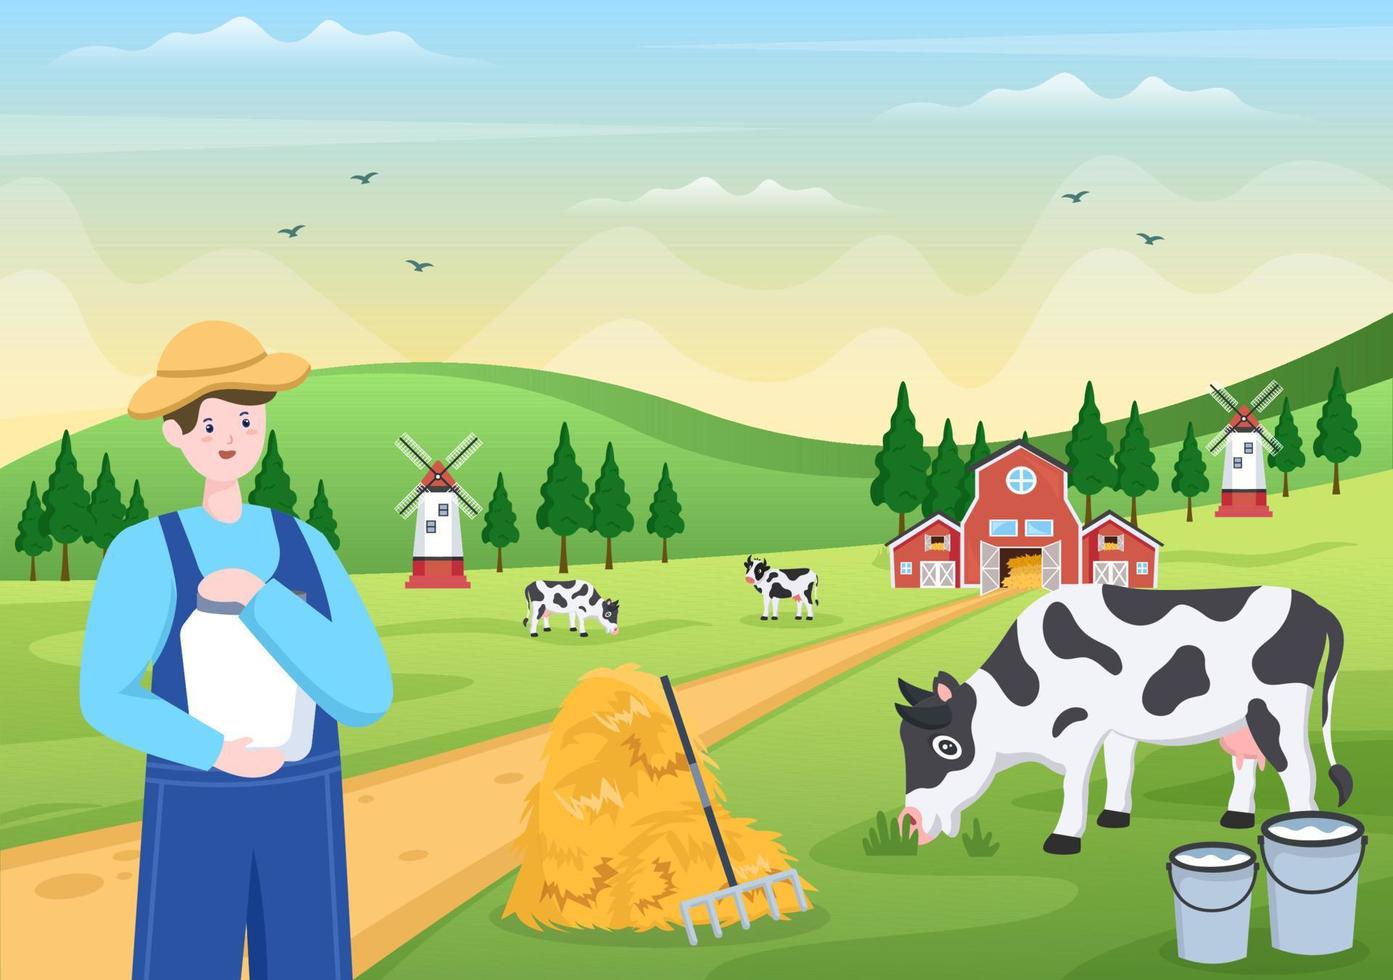 los granjeros están ordeñando vacas para producir u obtener leche con vistas a prados verdes o en granjas en un estilo plano ilustrativo vector